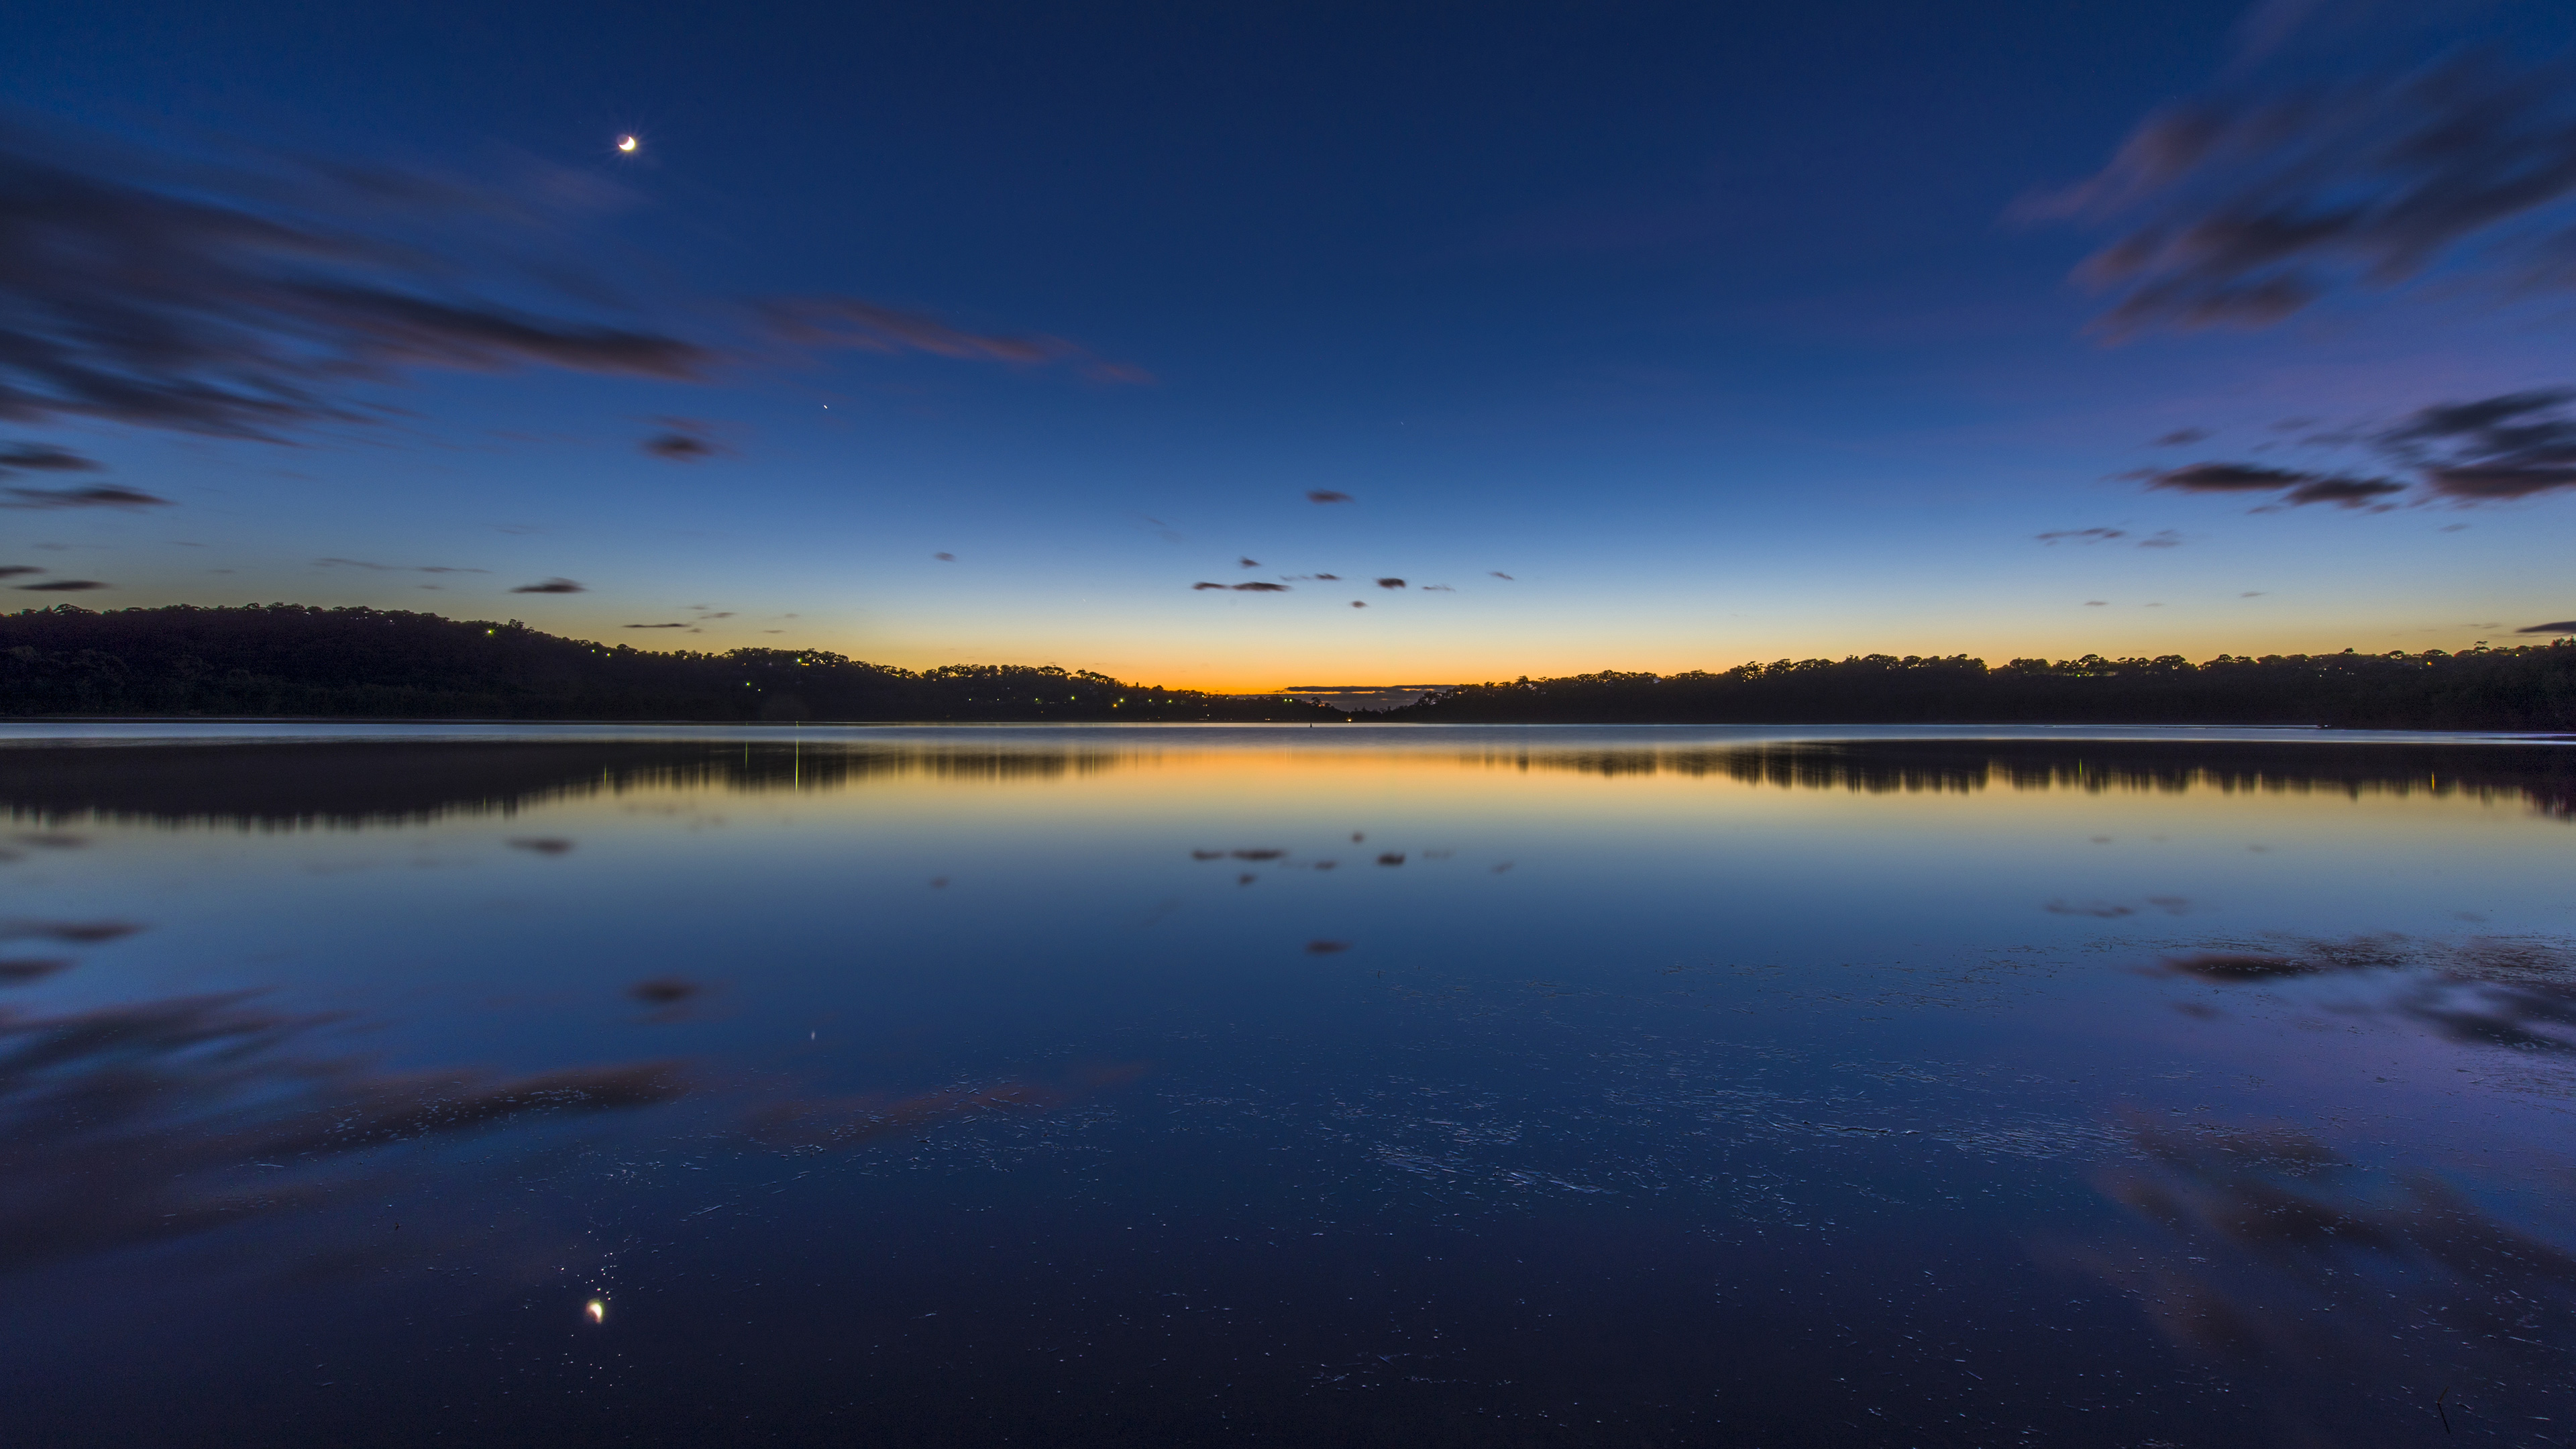 Hồ Narrabeen là một trong những danh thắng đẹp nhất của Úc. Với hình nền hồ Narrabeen đẹp cho Windows 10 của chúng tôi, bạn sẽ được thưởng thức những cảnh đẹp như mơ ước, sức sống vô tận từ hồ nước xanh trong những bức ảnh sống động.